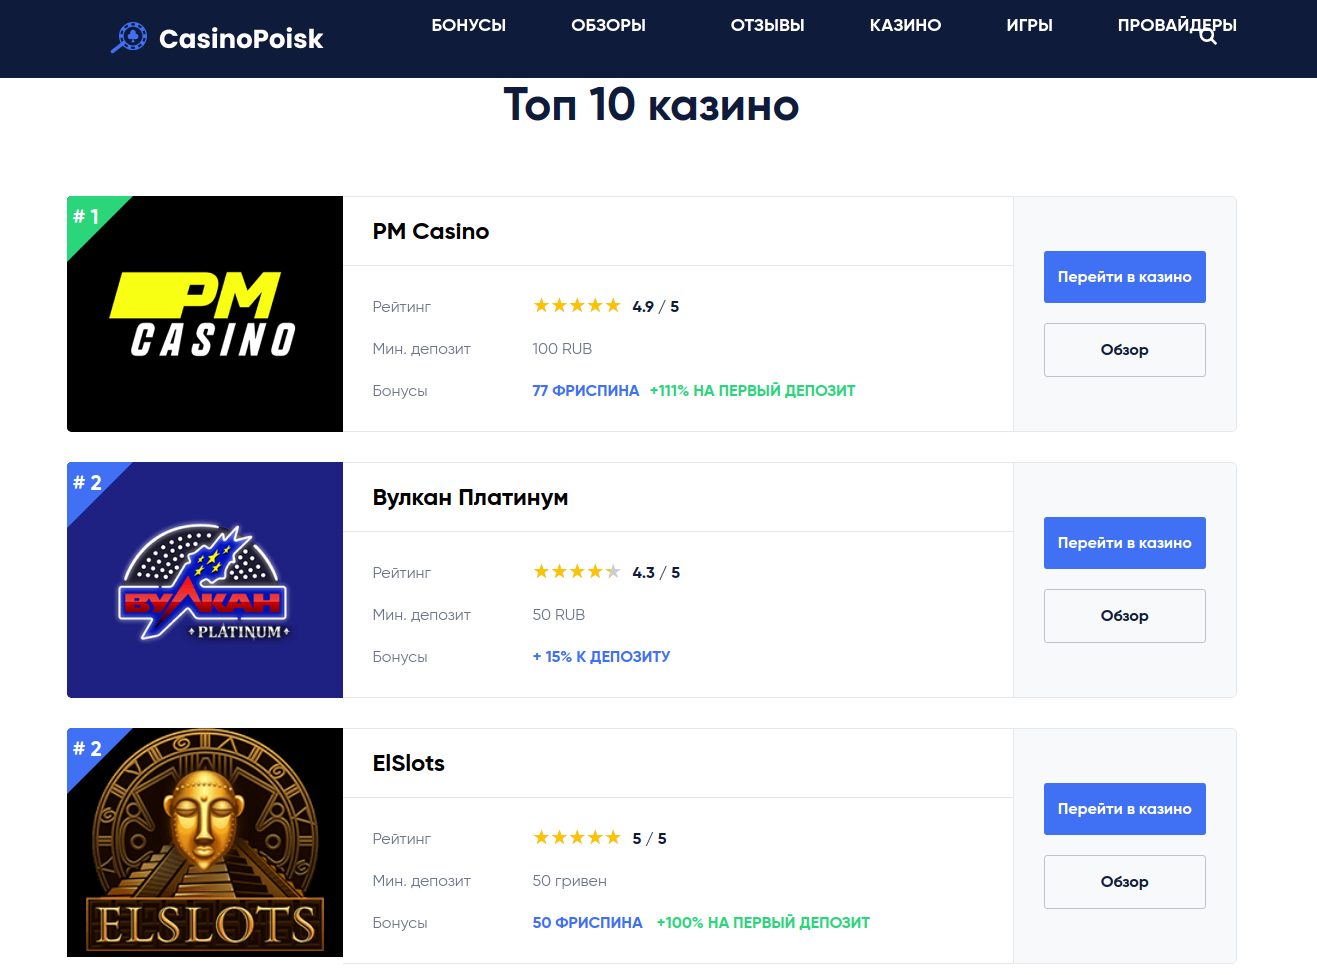 Онлайн казино рейтинг 2017 казино онлайн для украины